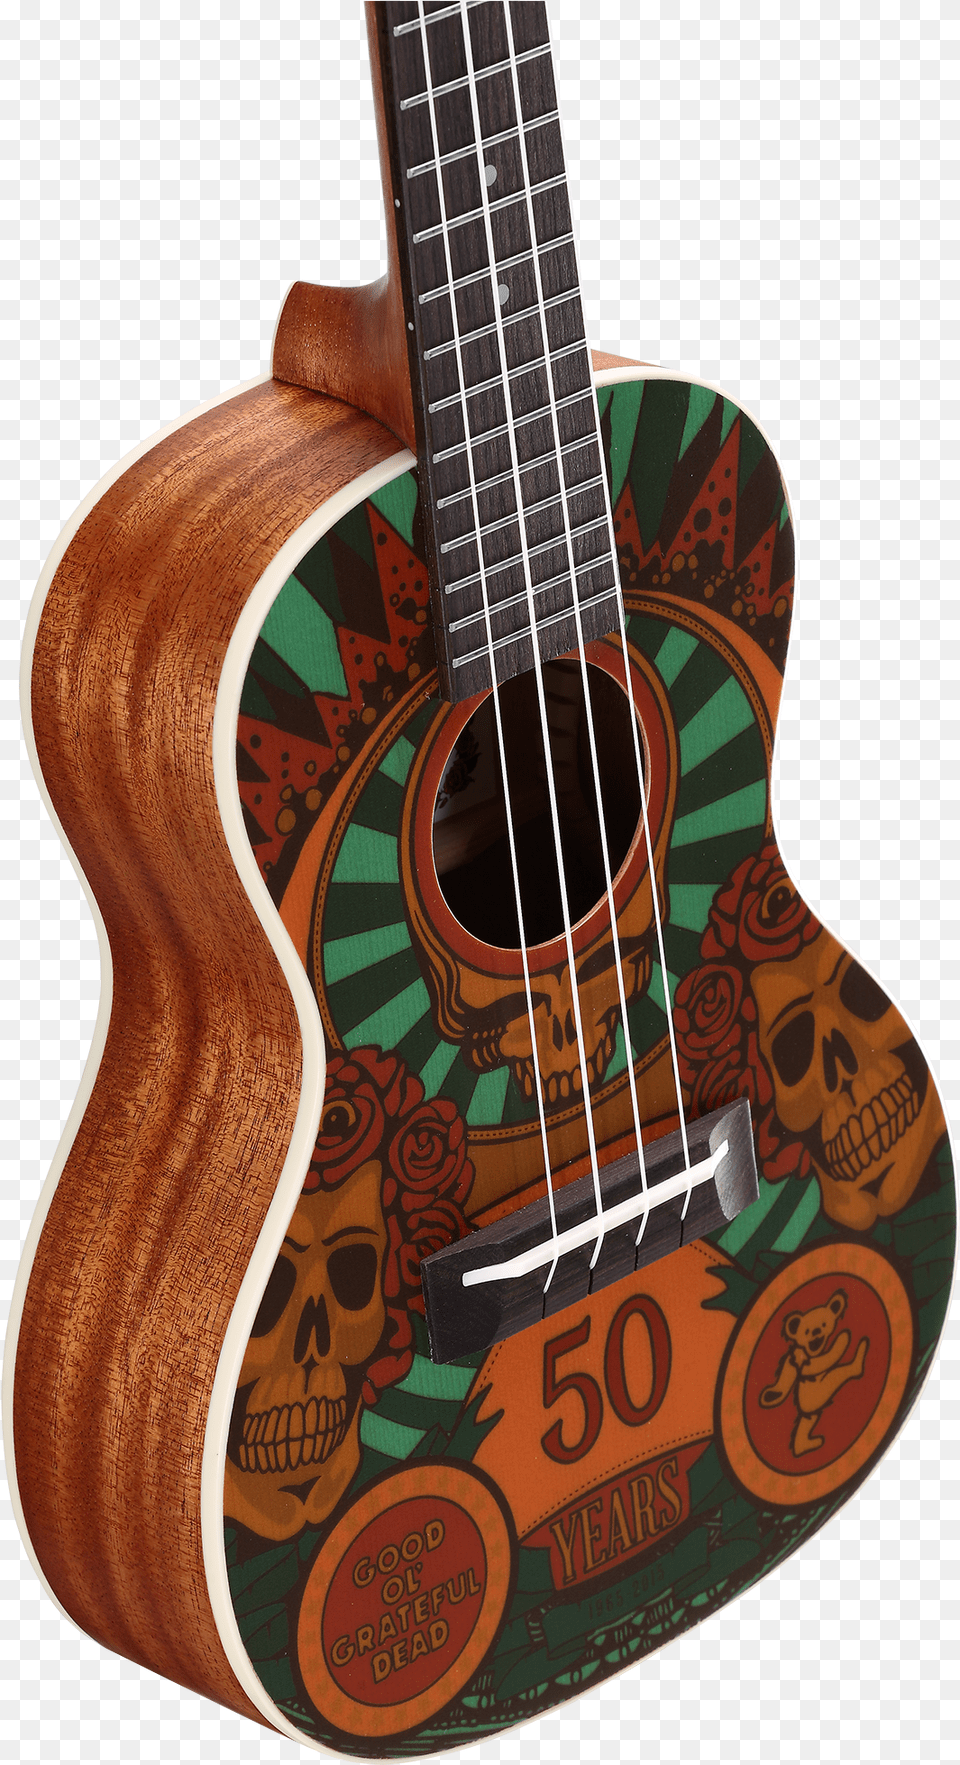 Ukulele Clipart Brown Grateful Dead Ukulele, Bass Guitar, Guitar, Musical Instrument Png Image